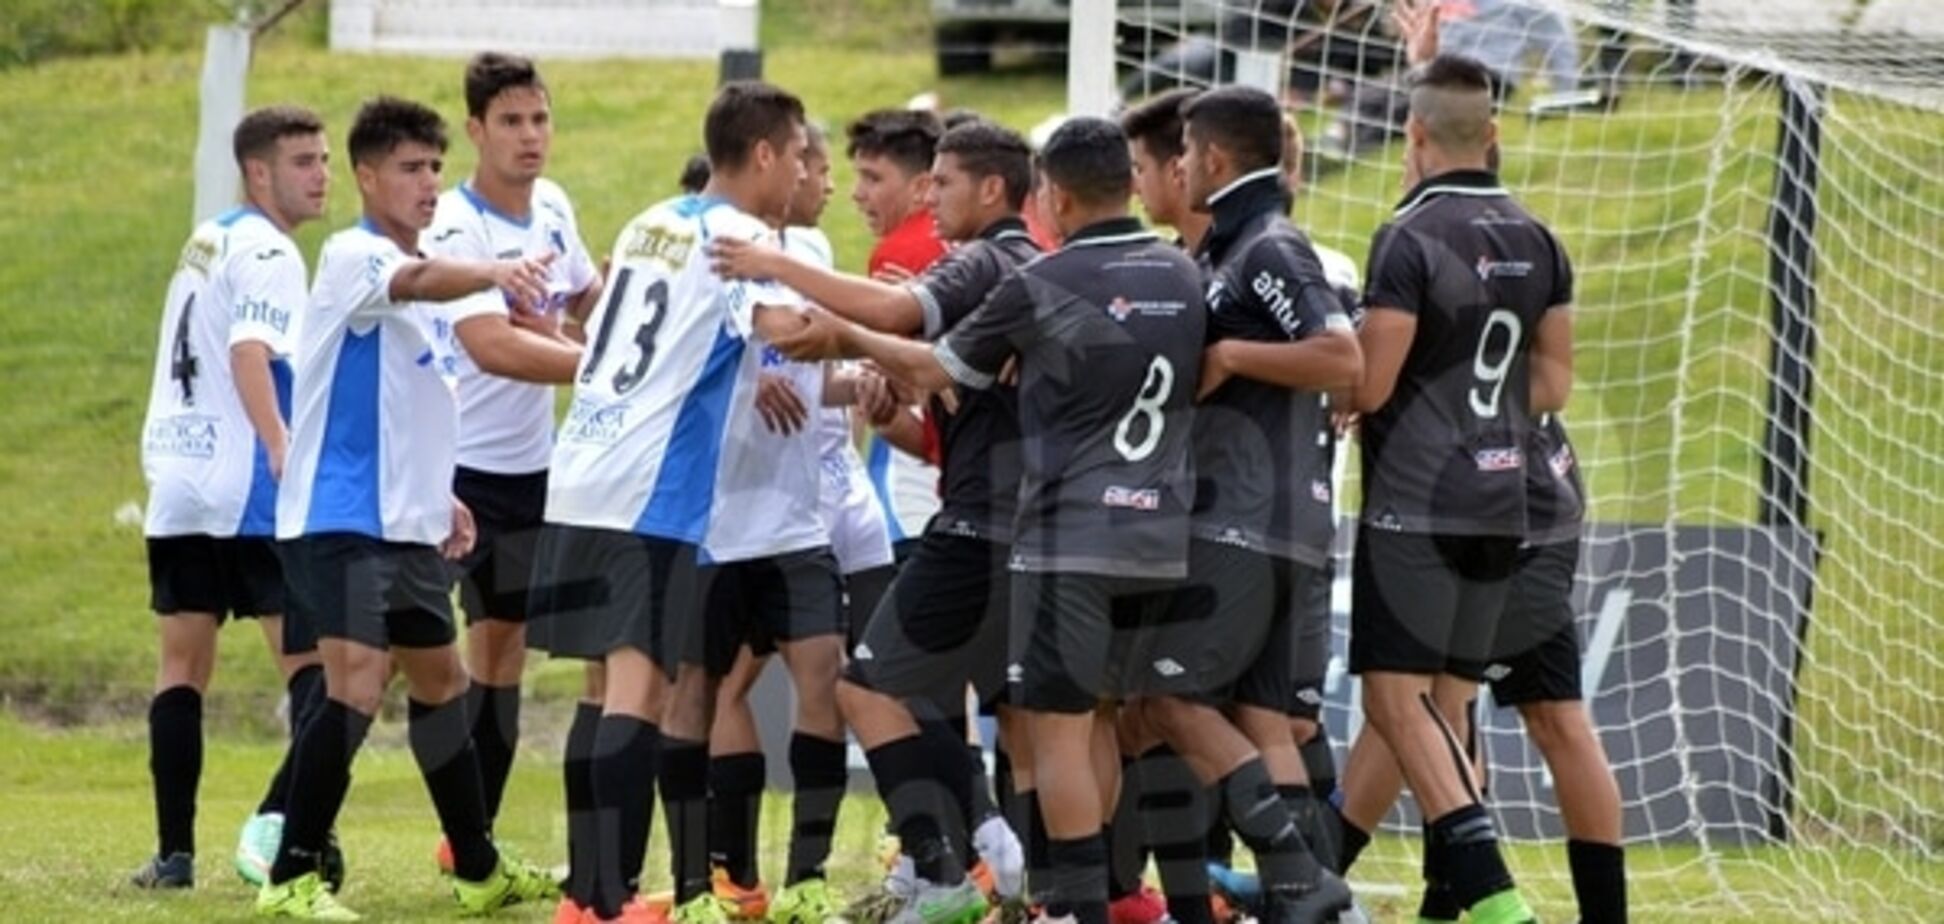 Футбольный матч юношеских команд в Уругвае закончился рукопашной на поле: видео инцидента